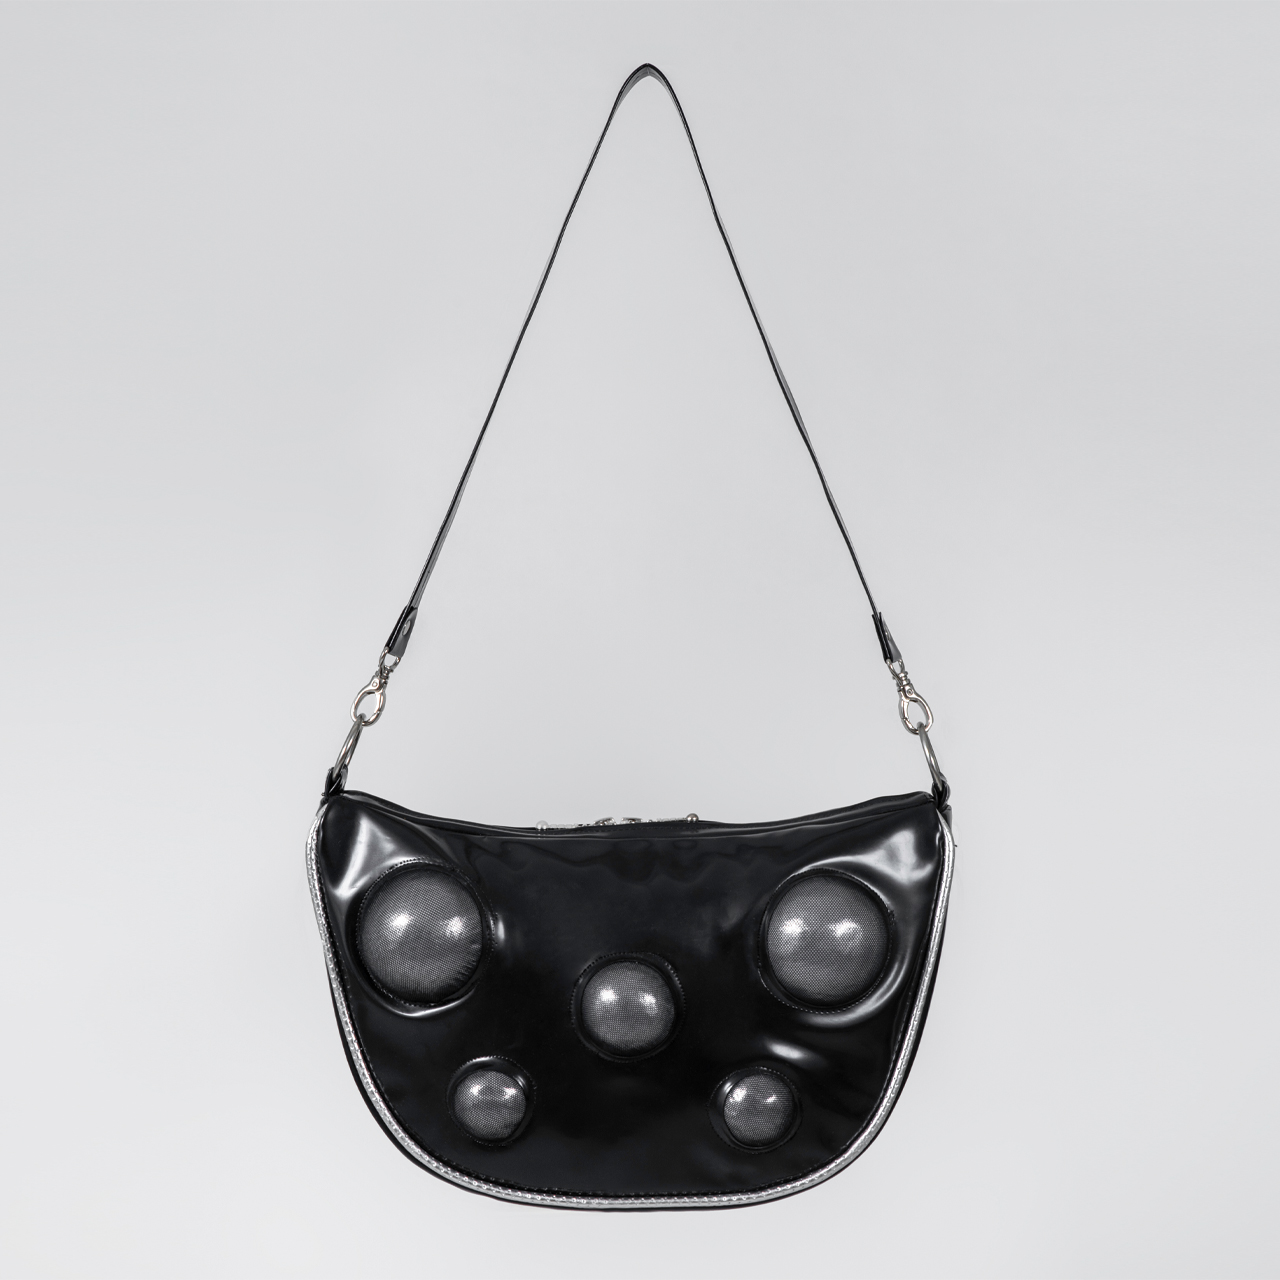 Bubbles handbag